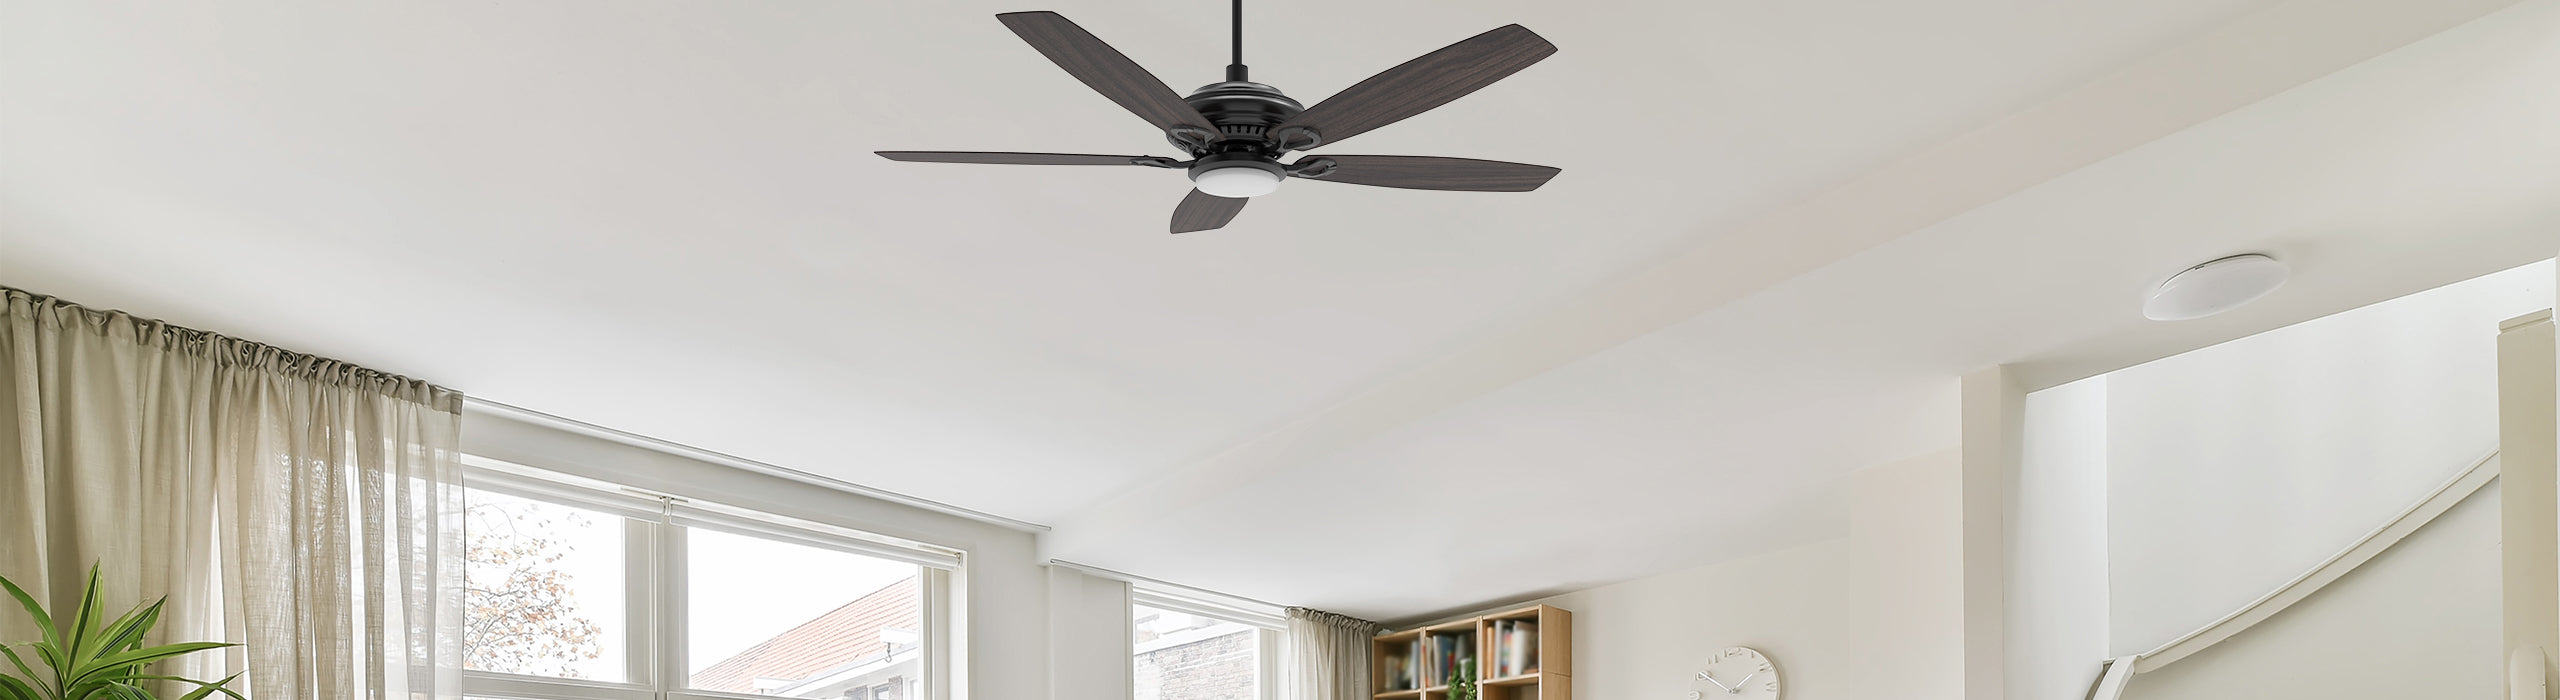 Smafan Extension DC ceiling fan downrods 